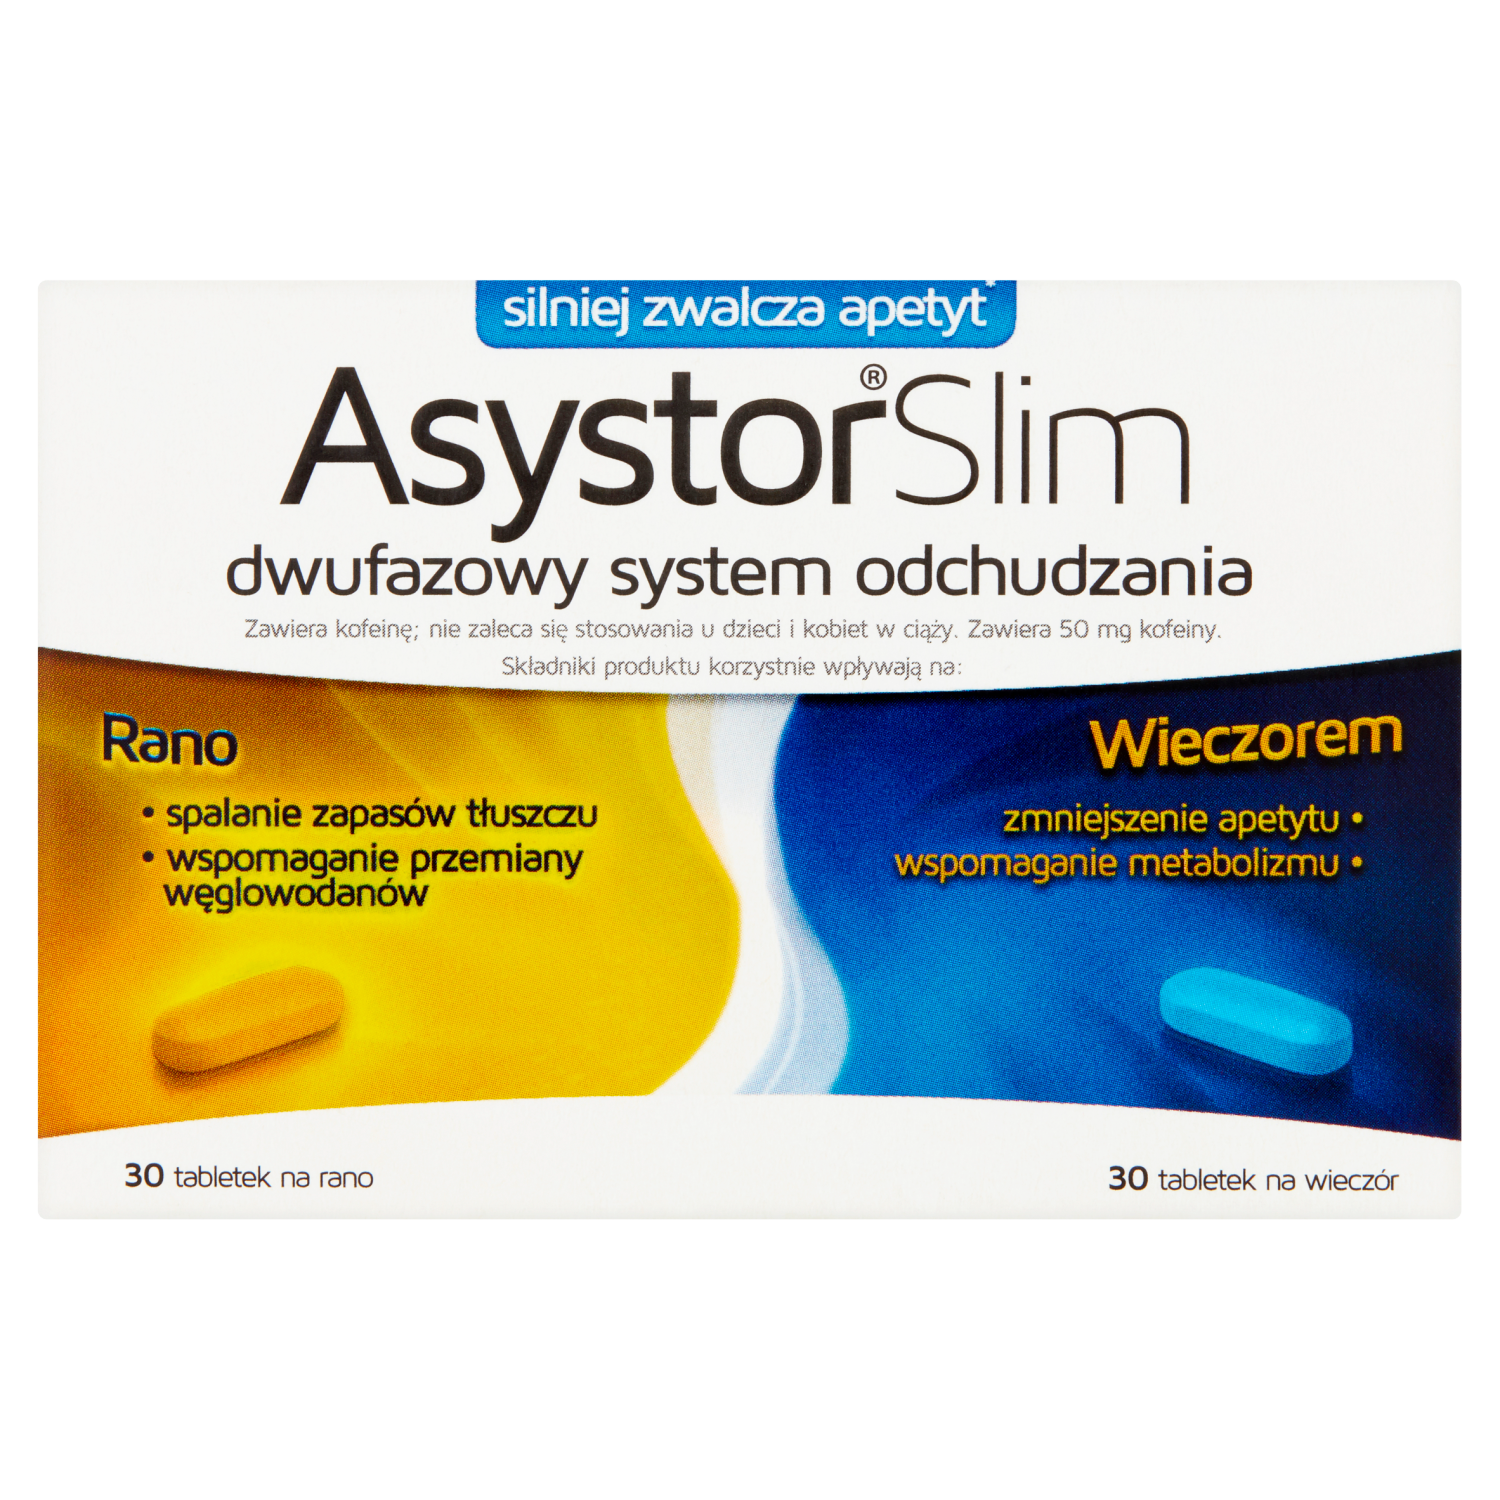 linea detox биологически активная добавка 60 таблеток 1 упаковка Asystor Slim биологически активная добавка, 60 таблеток/1 упаковка